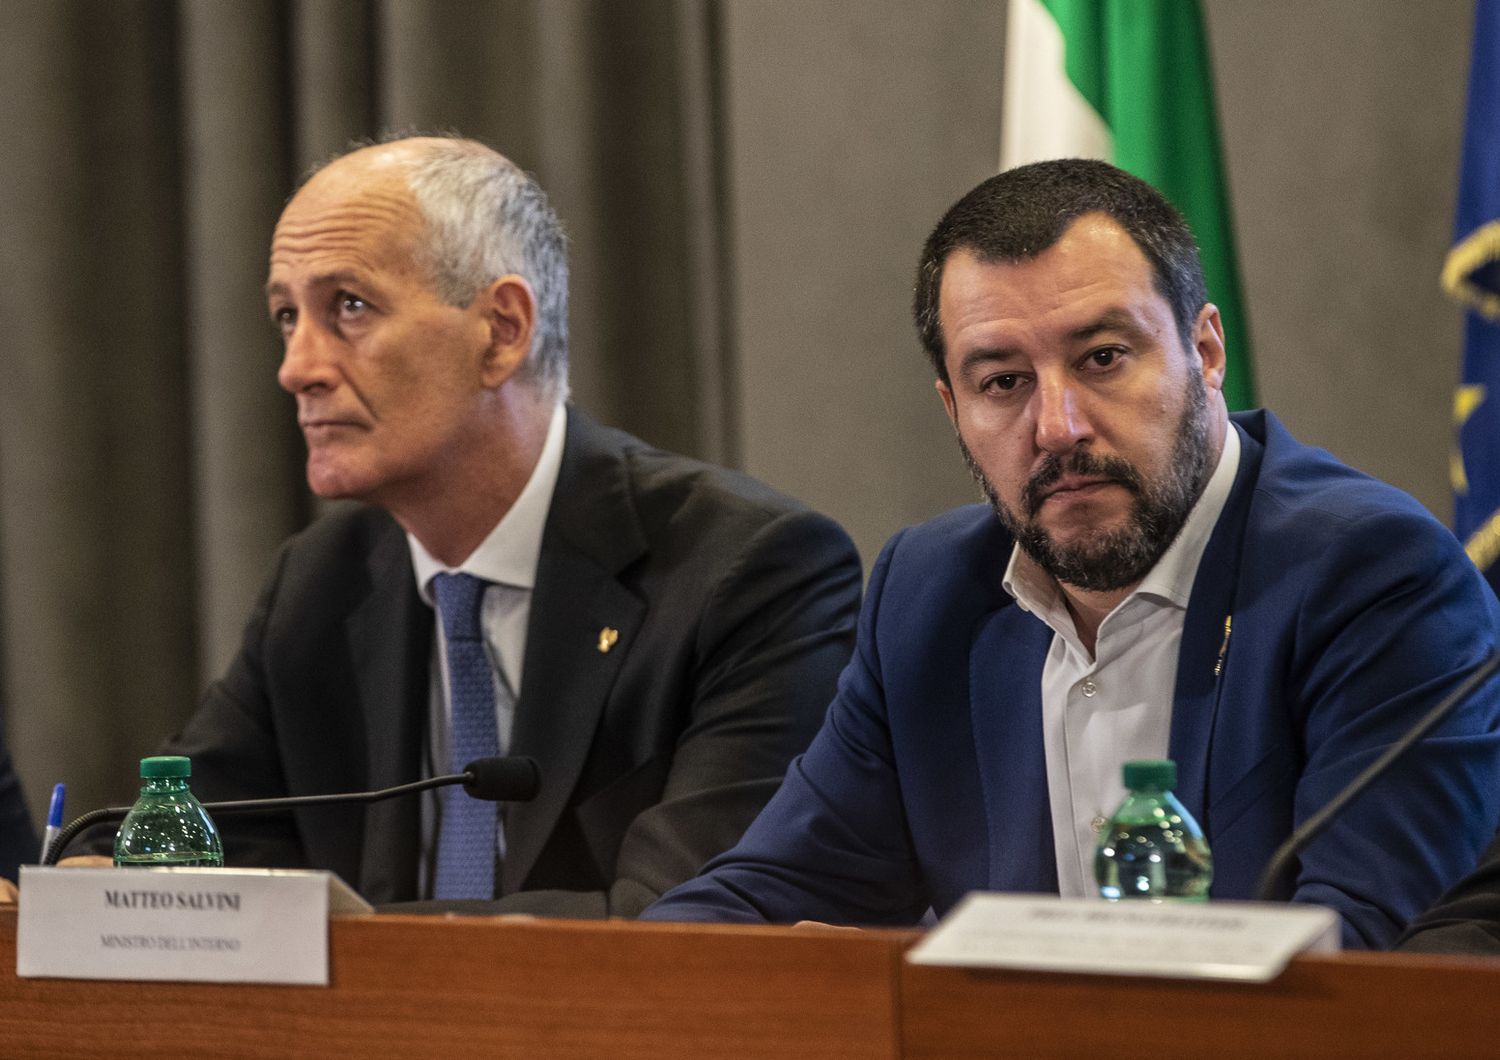 Franco Gabrielli e Matteo Salvini in una foto del 2018